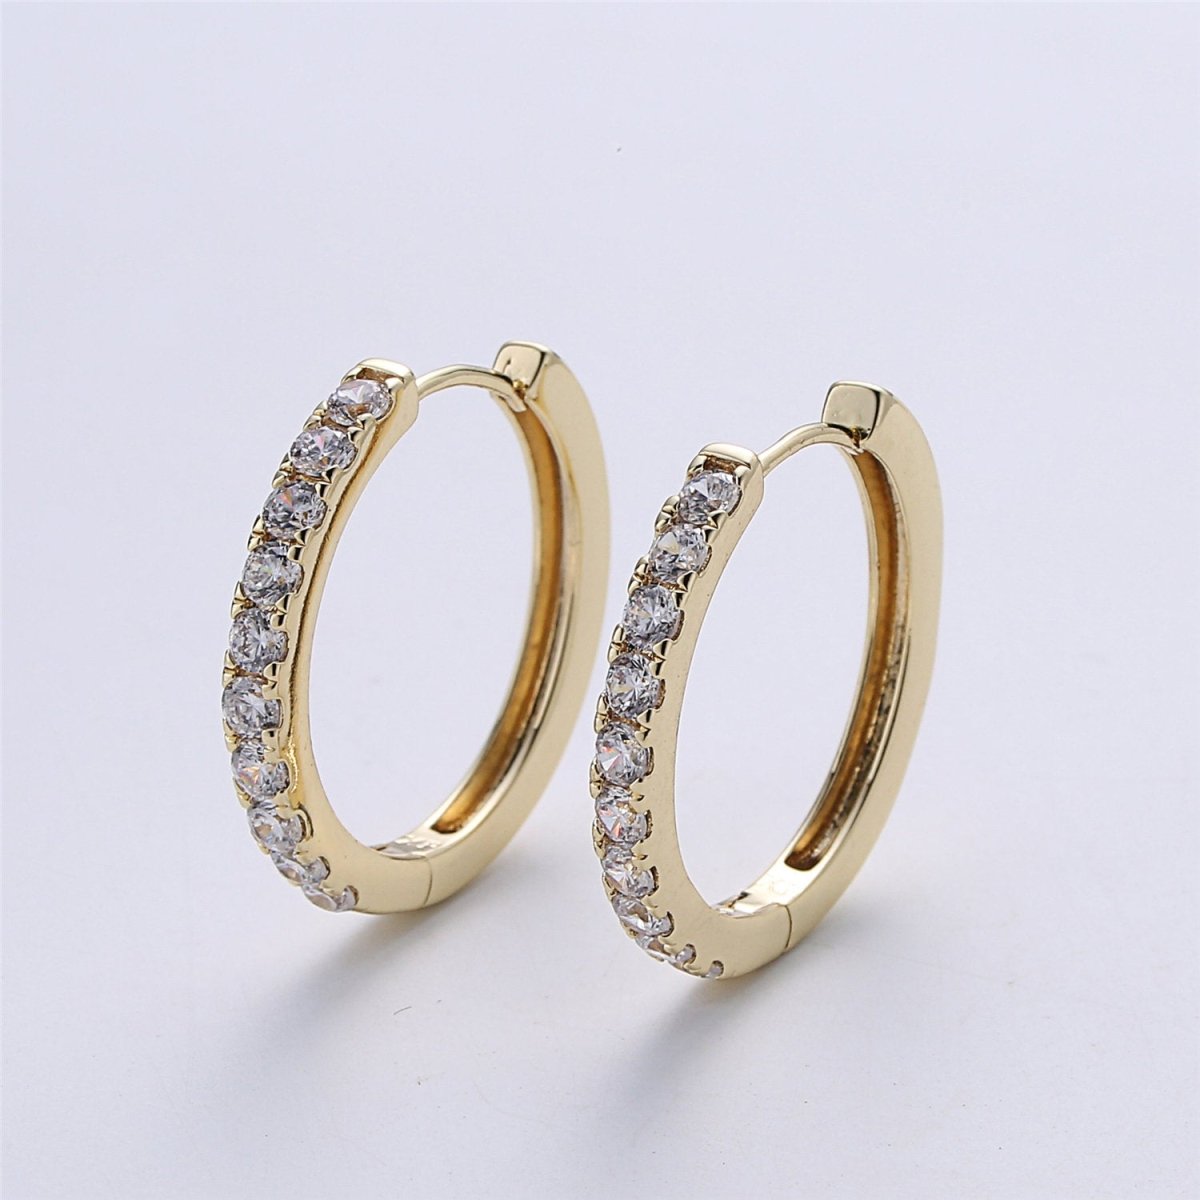 Small Gold Filled hoop earrings - huggie hoops earrings - Cubic hoop earrings - Dainty hoops - Tiny hoops - Thin hoops - Minimalist earrings Q-001 - DLUXCA